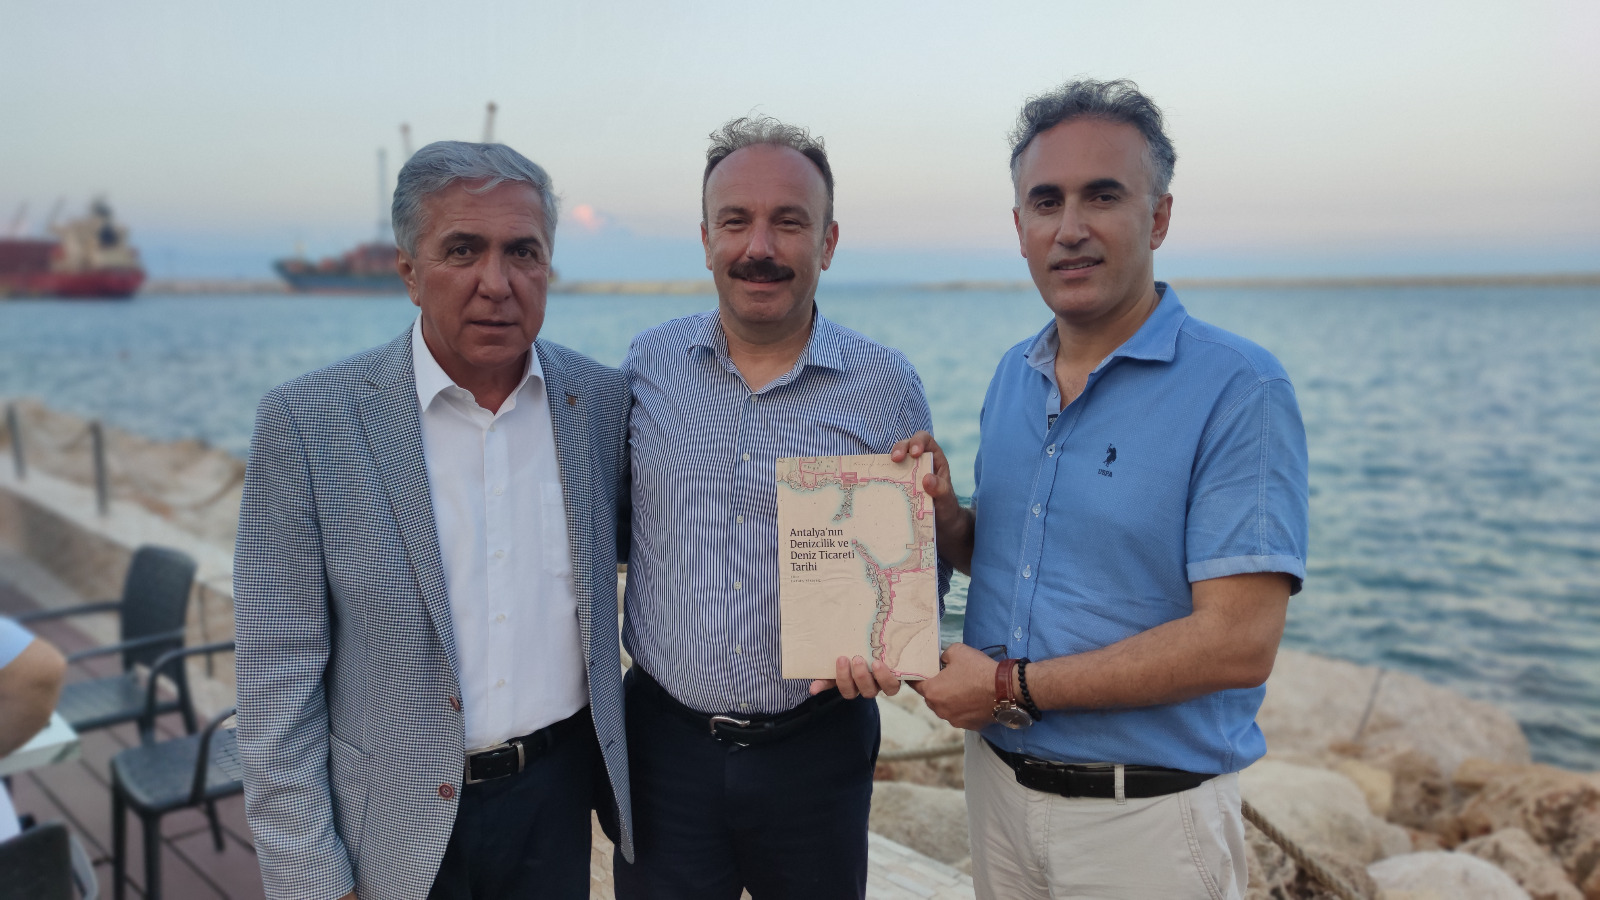 "Antalya'nın Denizcilik ve Deniz Ticareti Tarihi" Kitabı Tanıtıldı